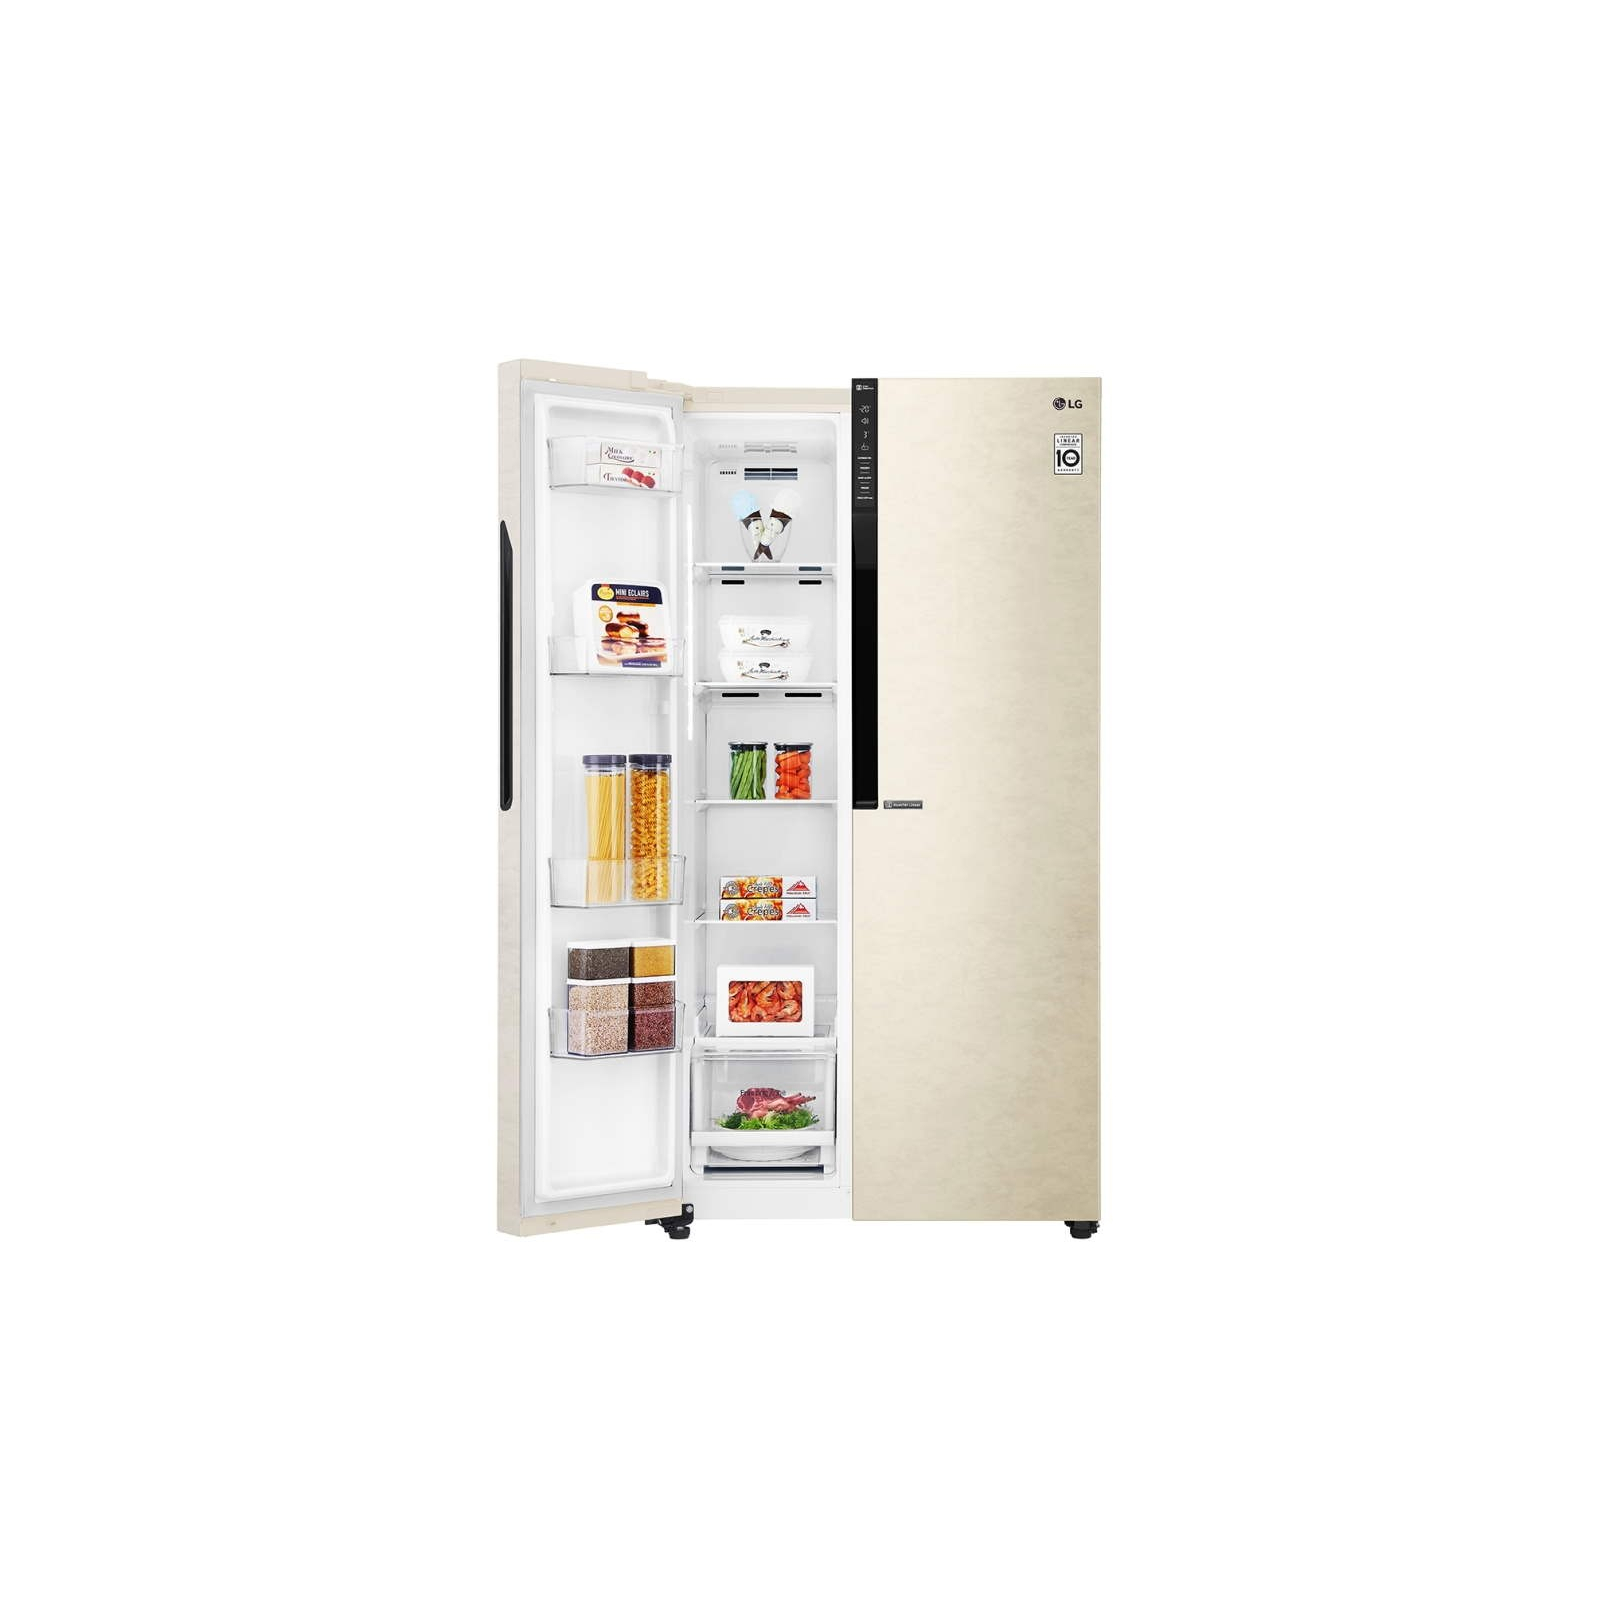 Холодильник LG GC-B247JEDV зображення 6